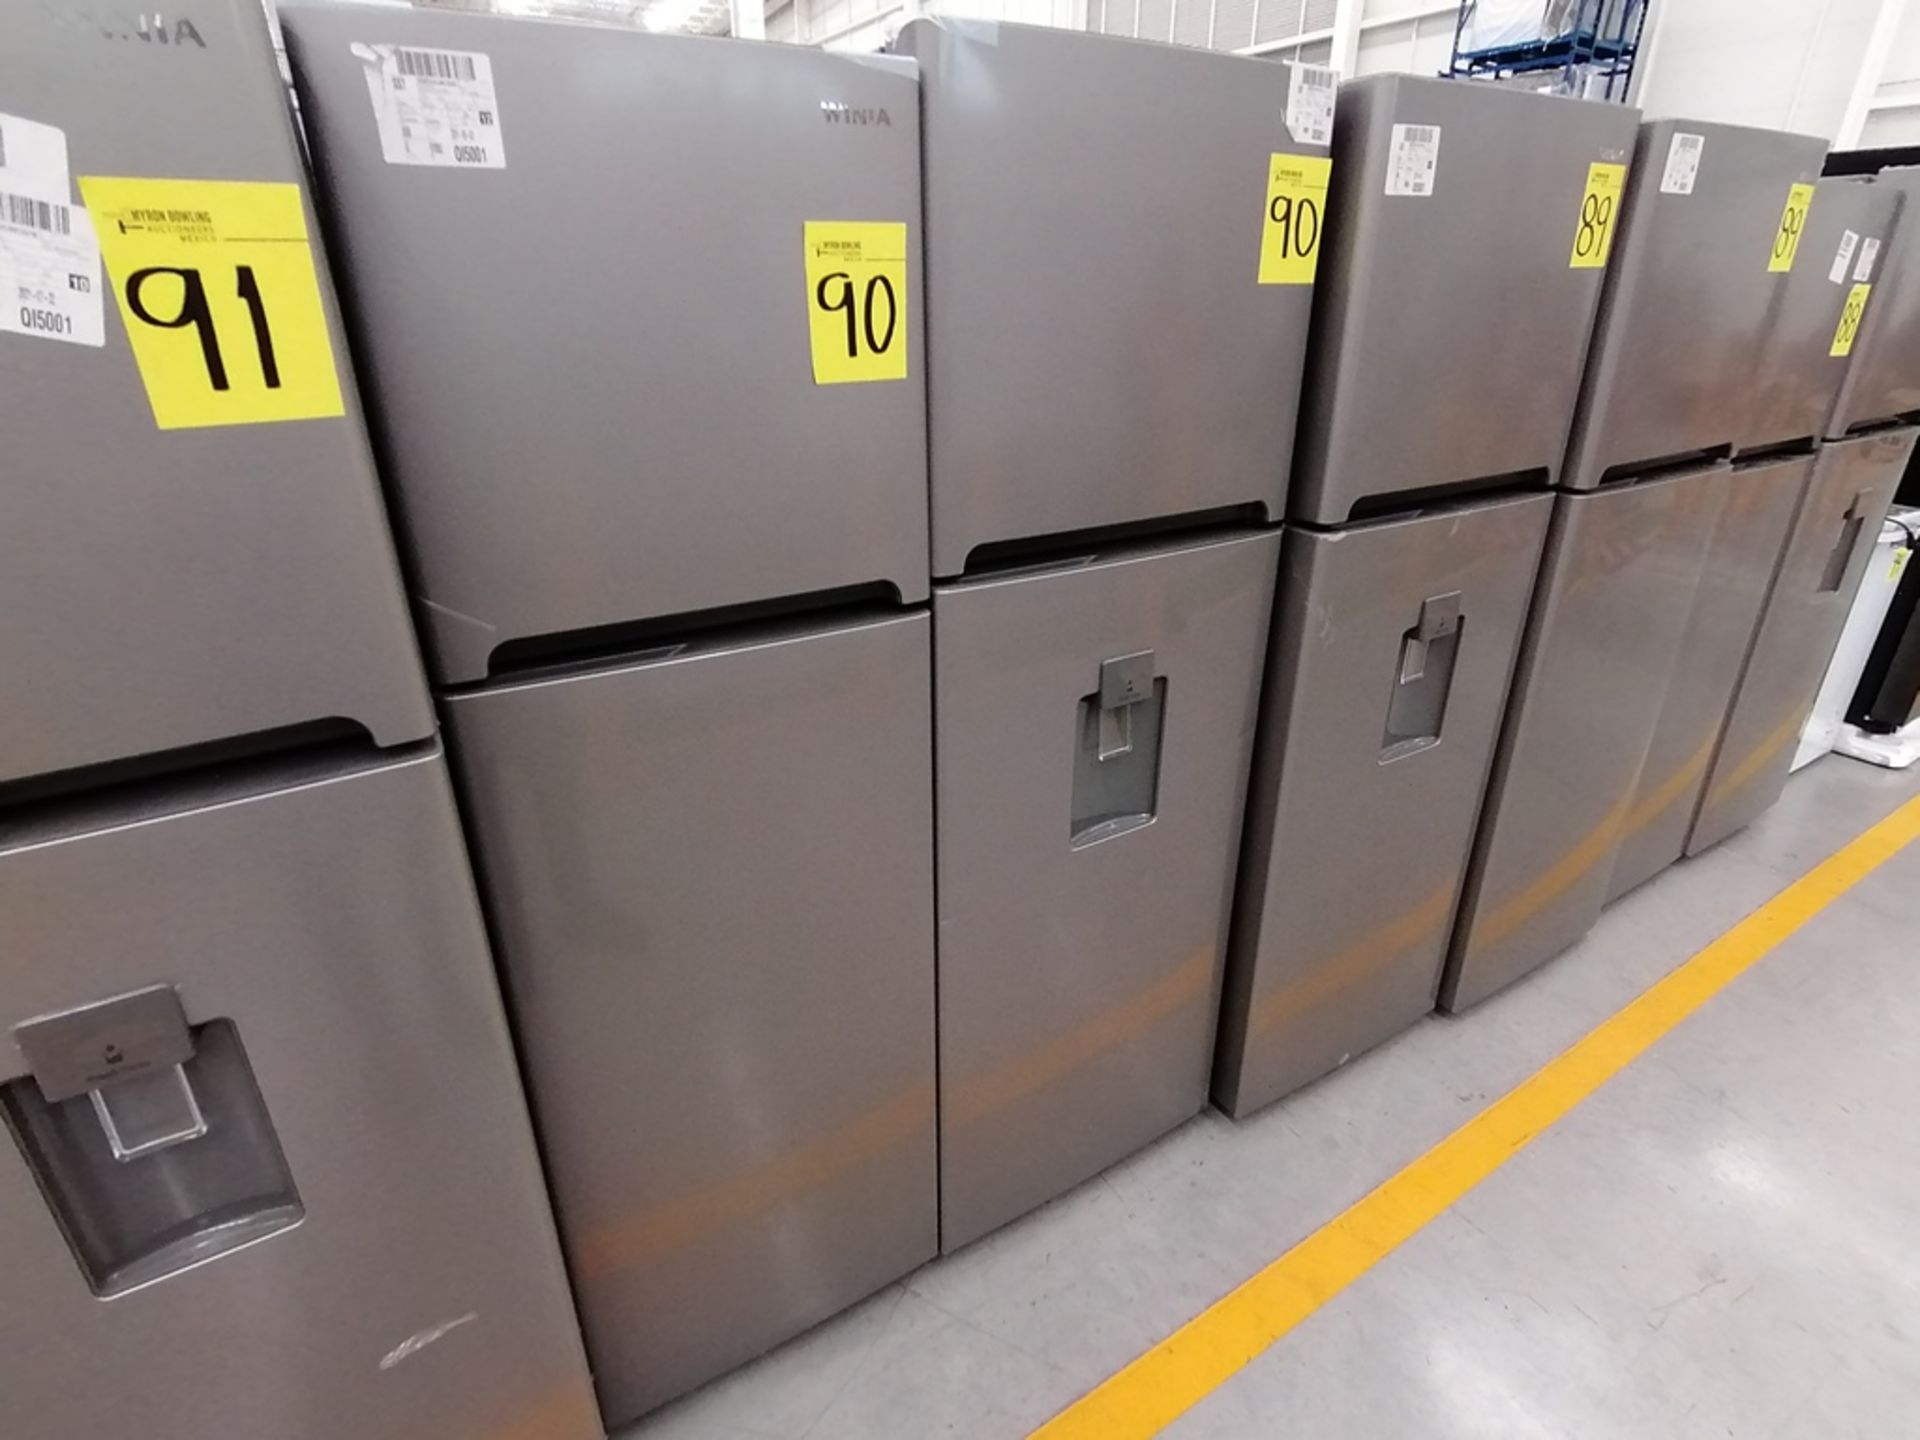 Lote de 2 Refrigeradores incluye: 1 Refrigerador, Marca Winia, Modelo DFR25120GN, Serie MR219N11624 - Image 9 of 15